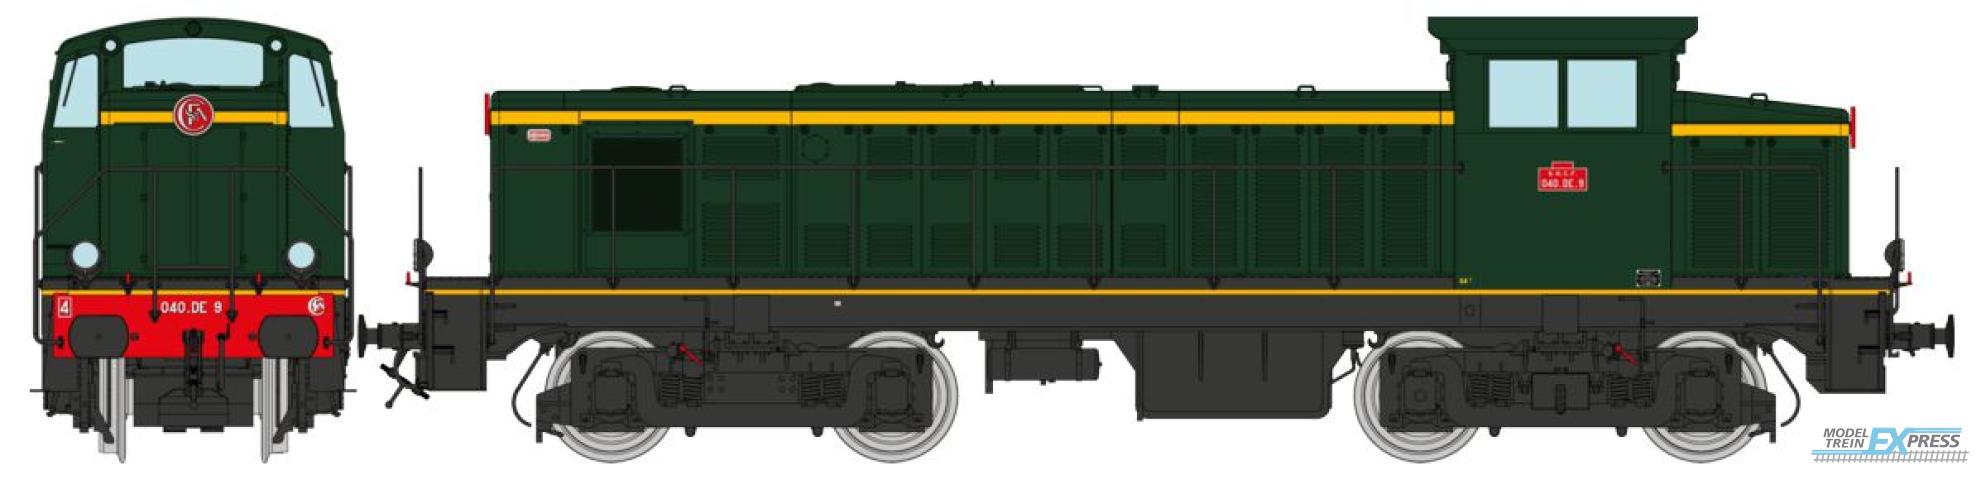 REE models JM-013S Diesel Locomotive 040 DE 09 origin, with rail grafts, région South West, Era III - DCC SOUND